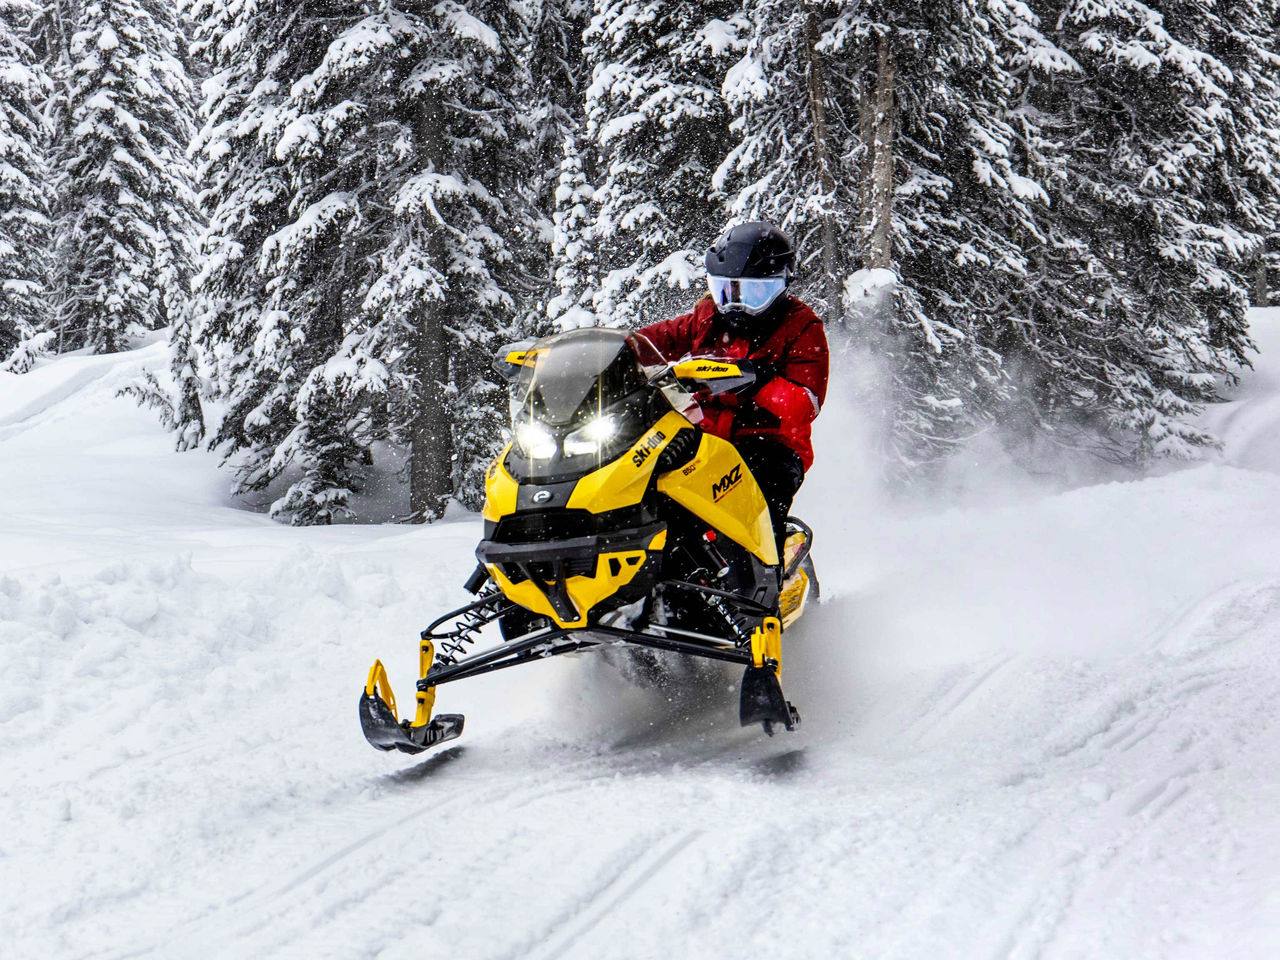 Ski-Doo REV Kar Aracının 20. Yılını Kutluyoruz